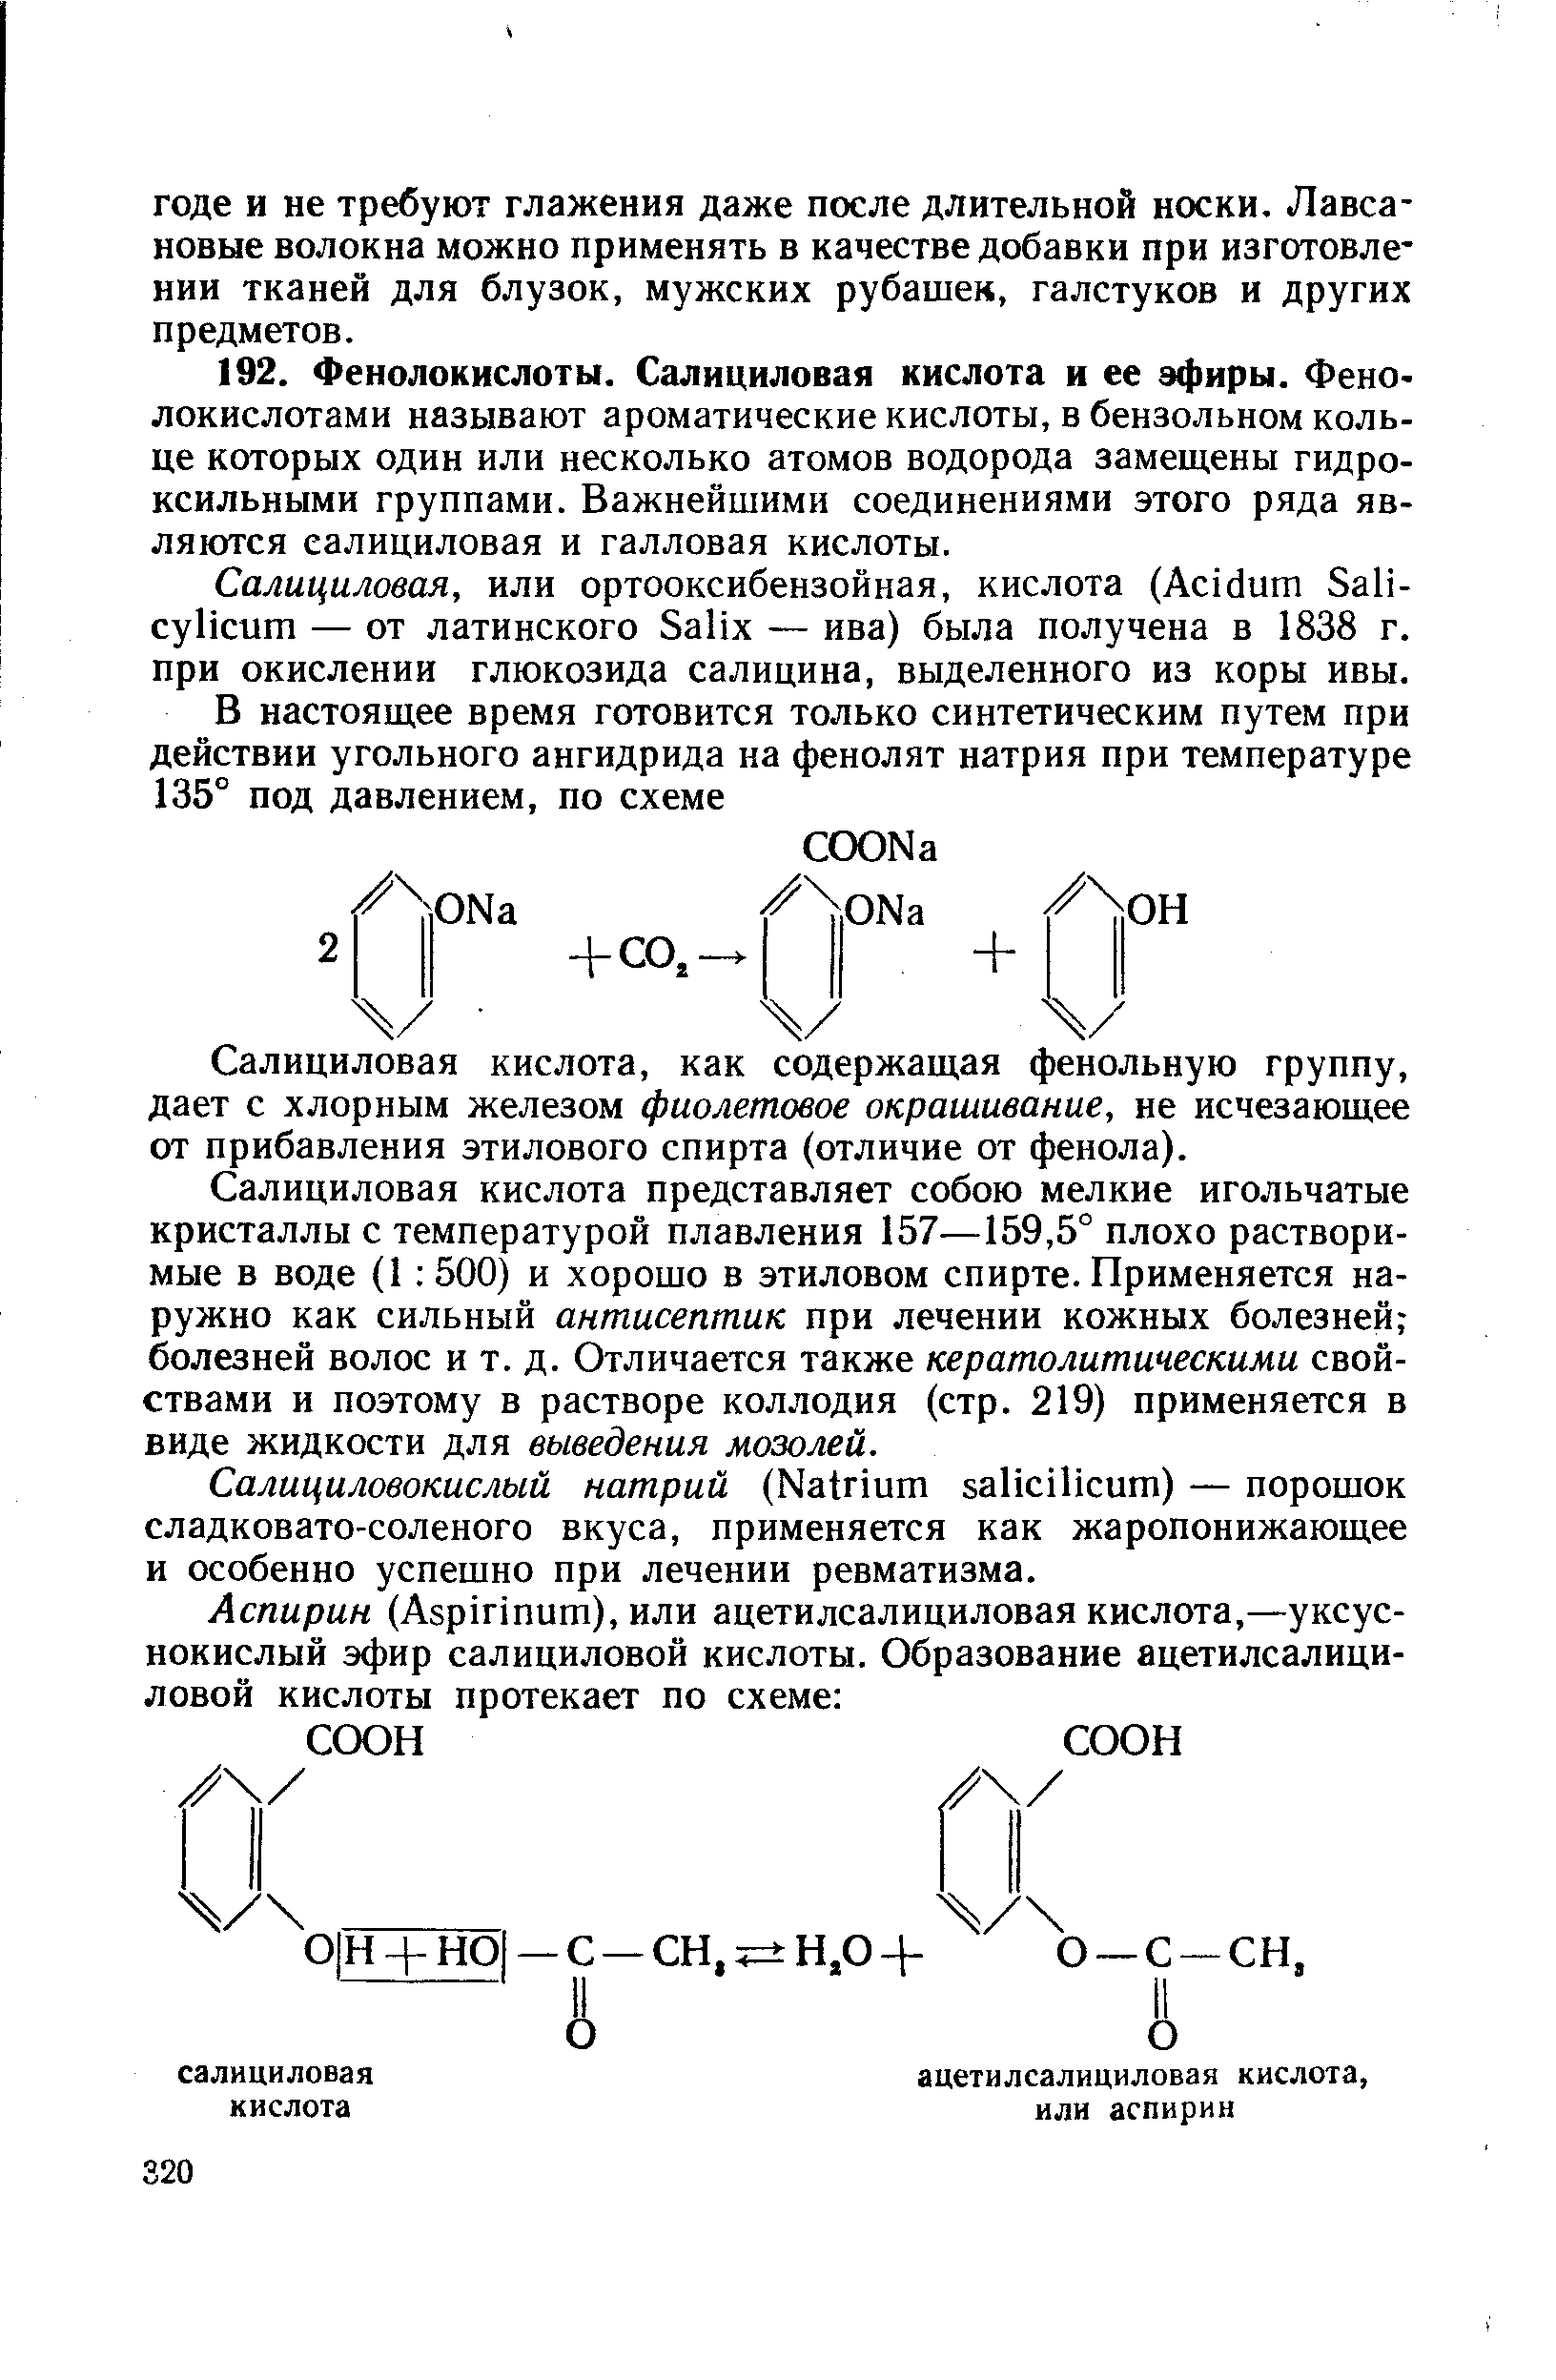 Салициловая кислота, как содержащая фенольную группу, дает с хлорным железом фиолетовое окрашивание, не исчезающее от прибавления этилового спирта (отличие от фенола).